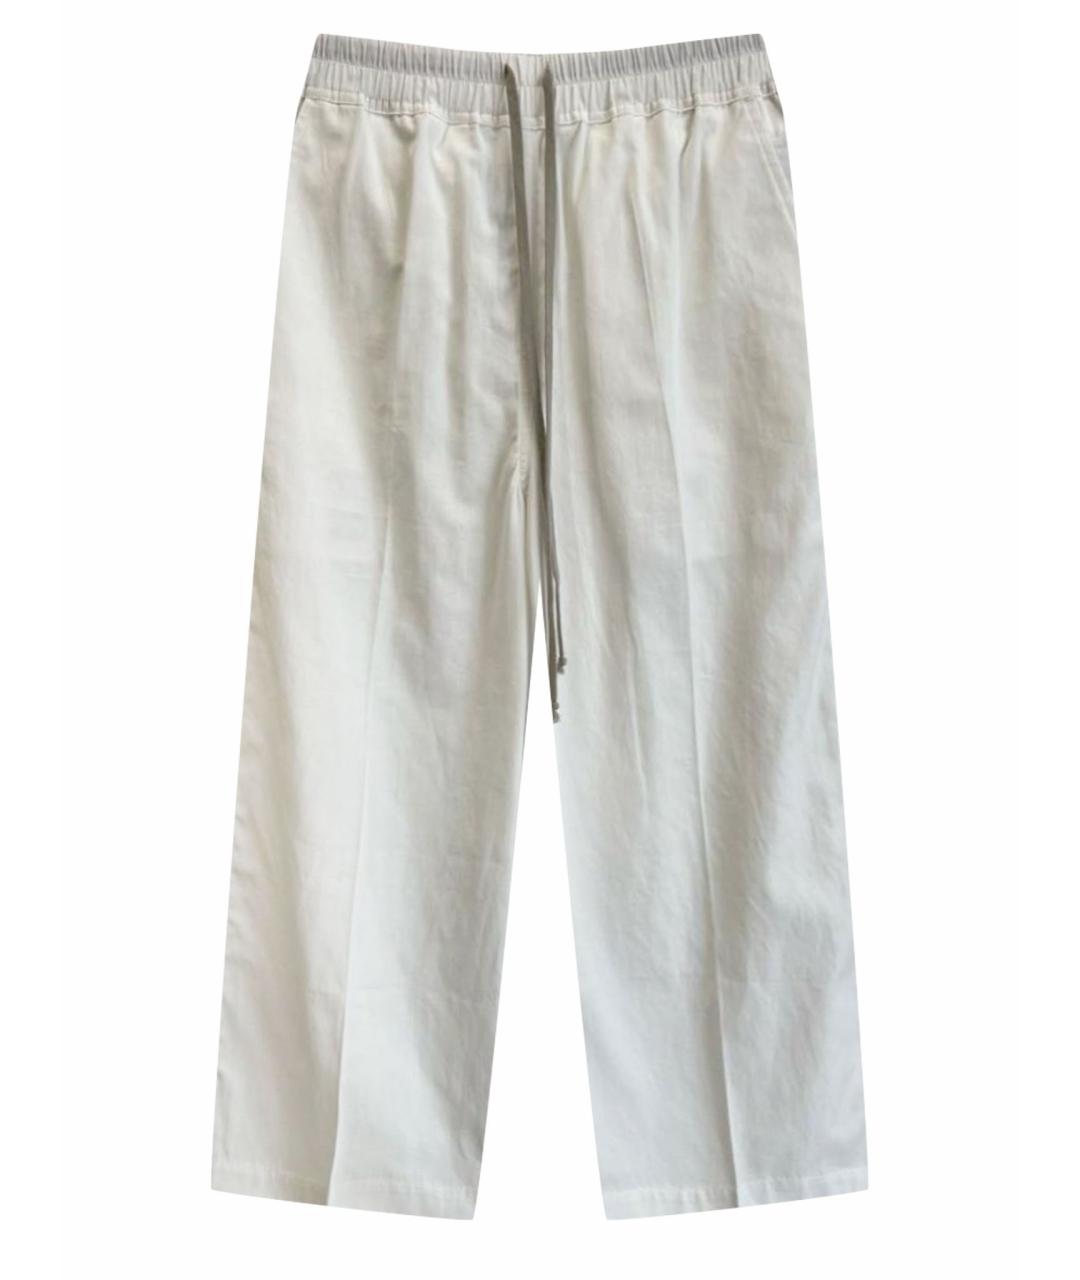 RICK OWENS DRKSHDW Белые хлопковые повседневные брюки, фото 1